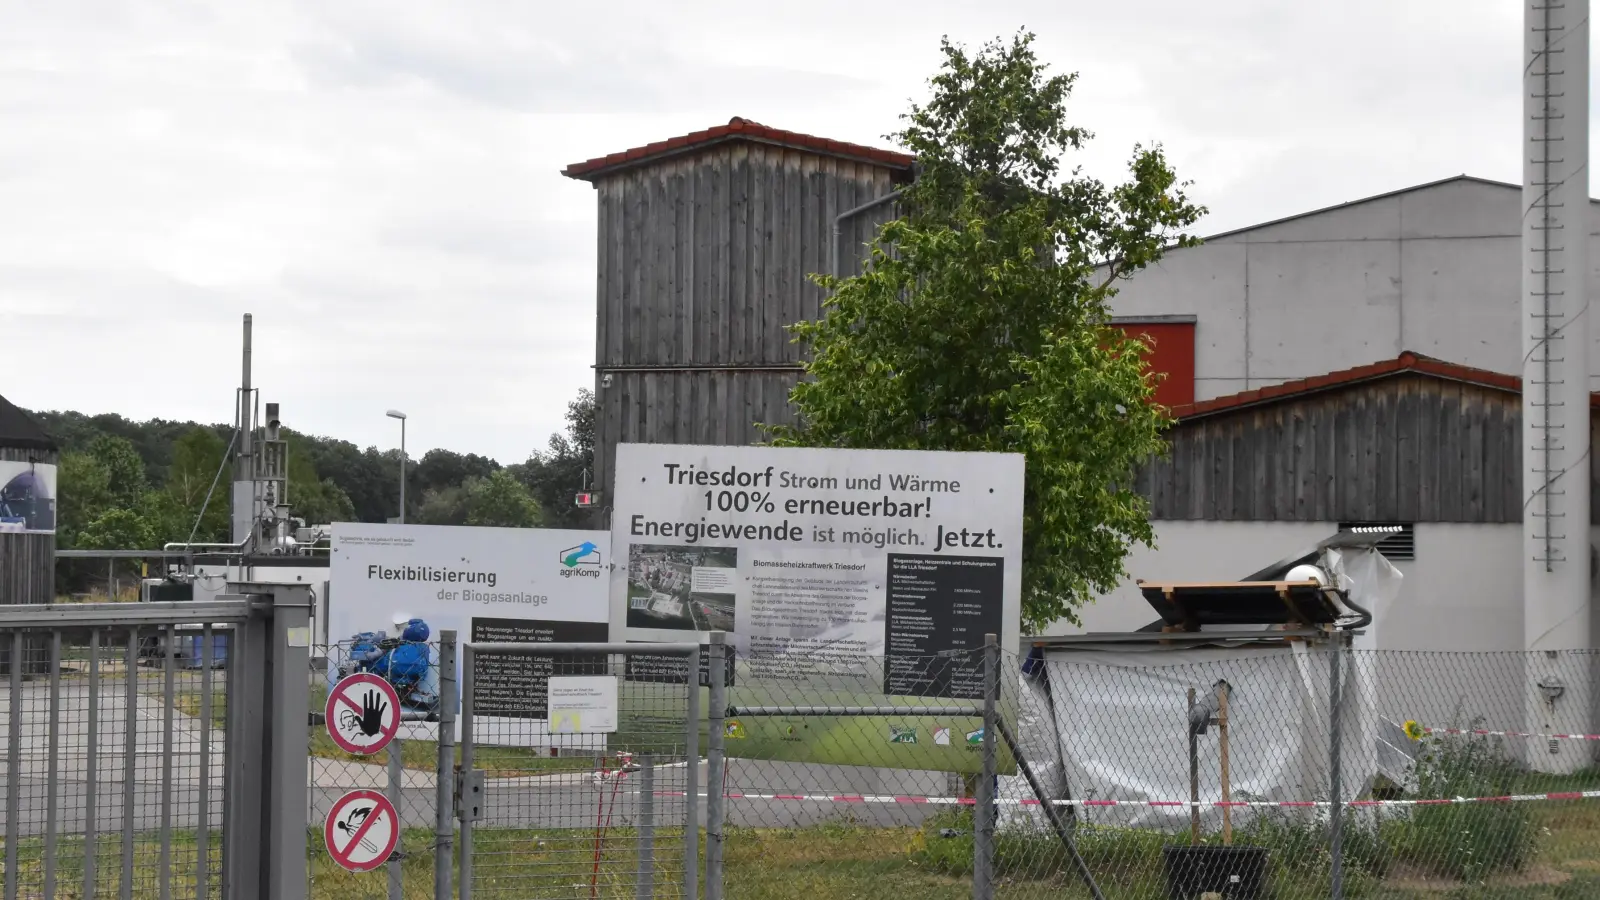 Günstig ist die Wärmeversorgung vor allem dort, wo wie in Triesdorf die Abwärme von Biogasanlagen genutzt werden kann. (Foto: Fritz Arnold)